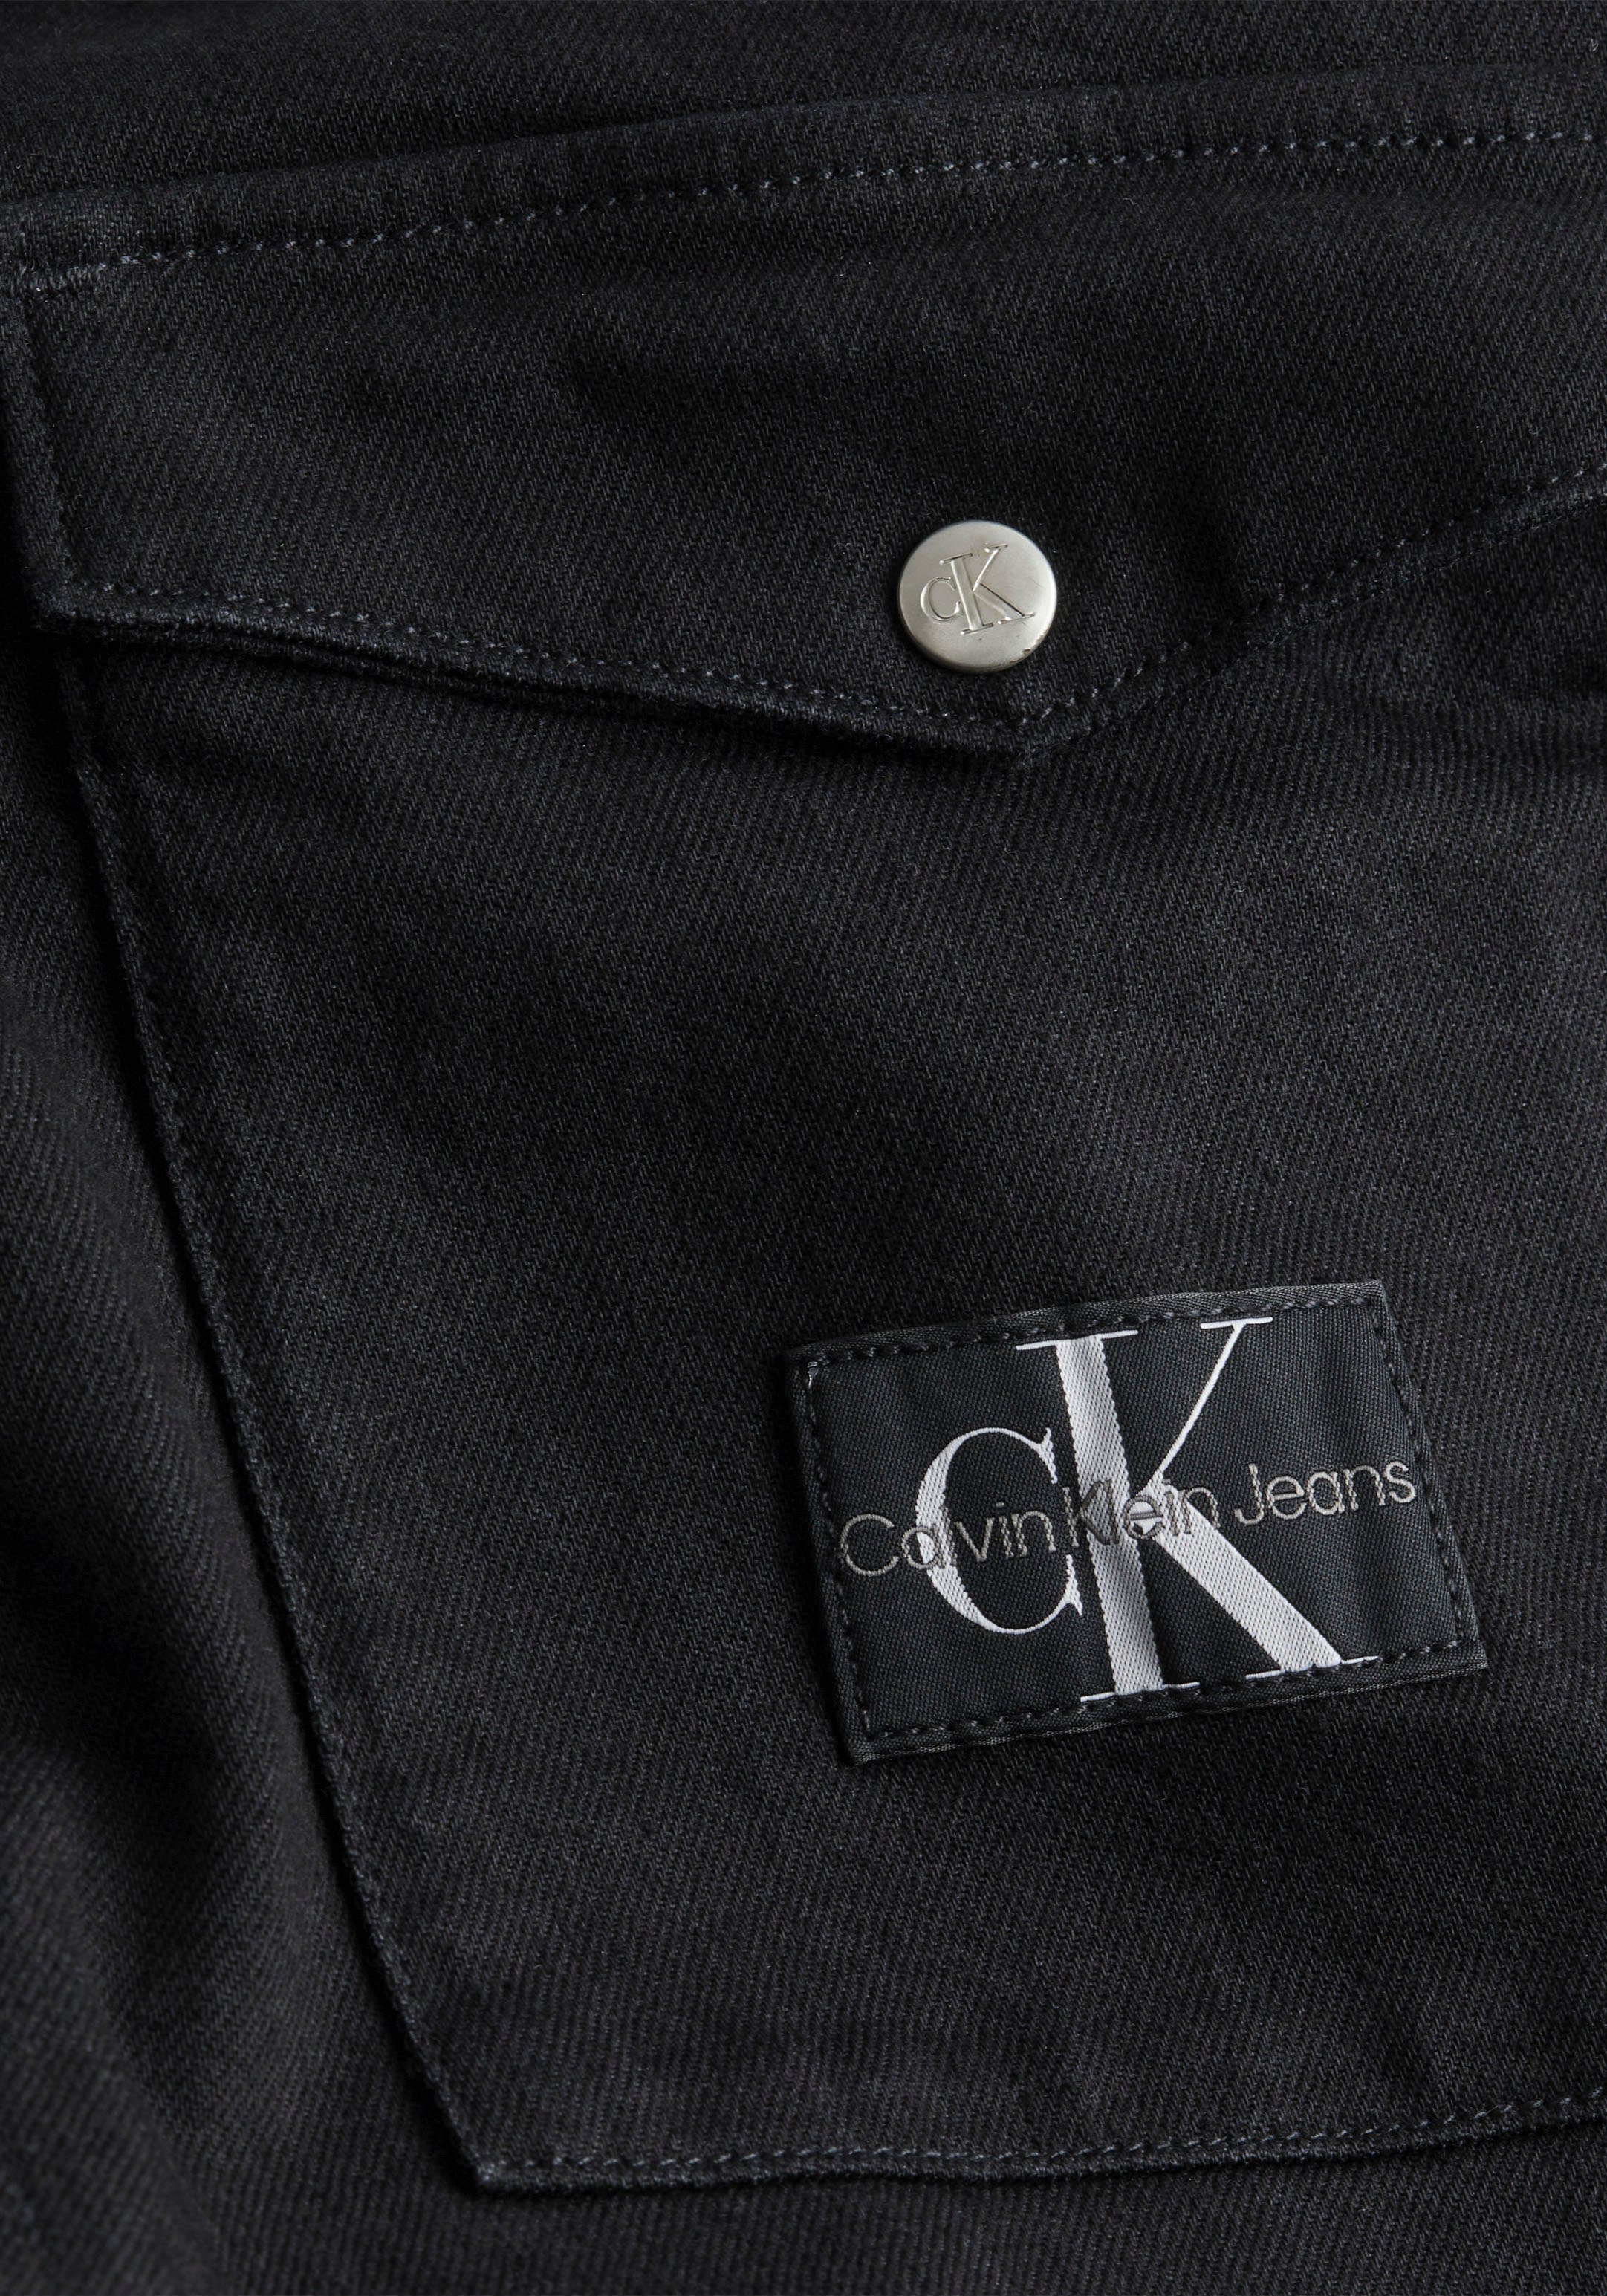 UTILITY Klein Jeans PLUS HERREN Calvin SHIRT Langarmhemd Plus JACKET